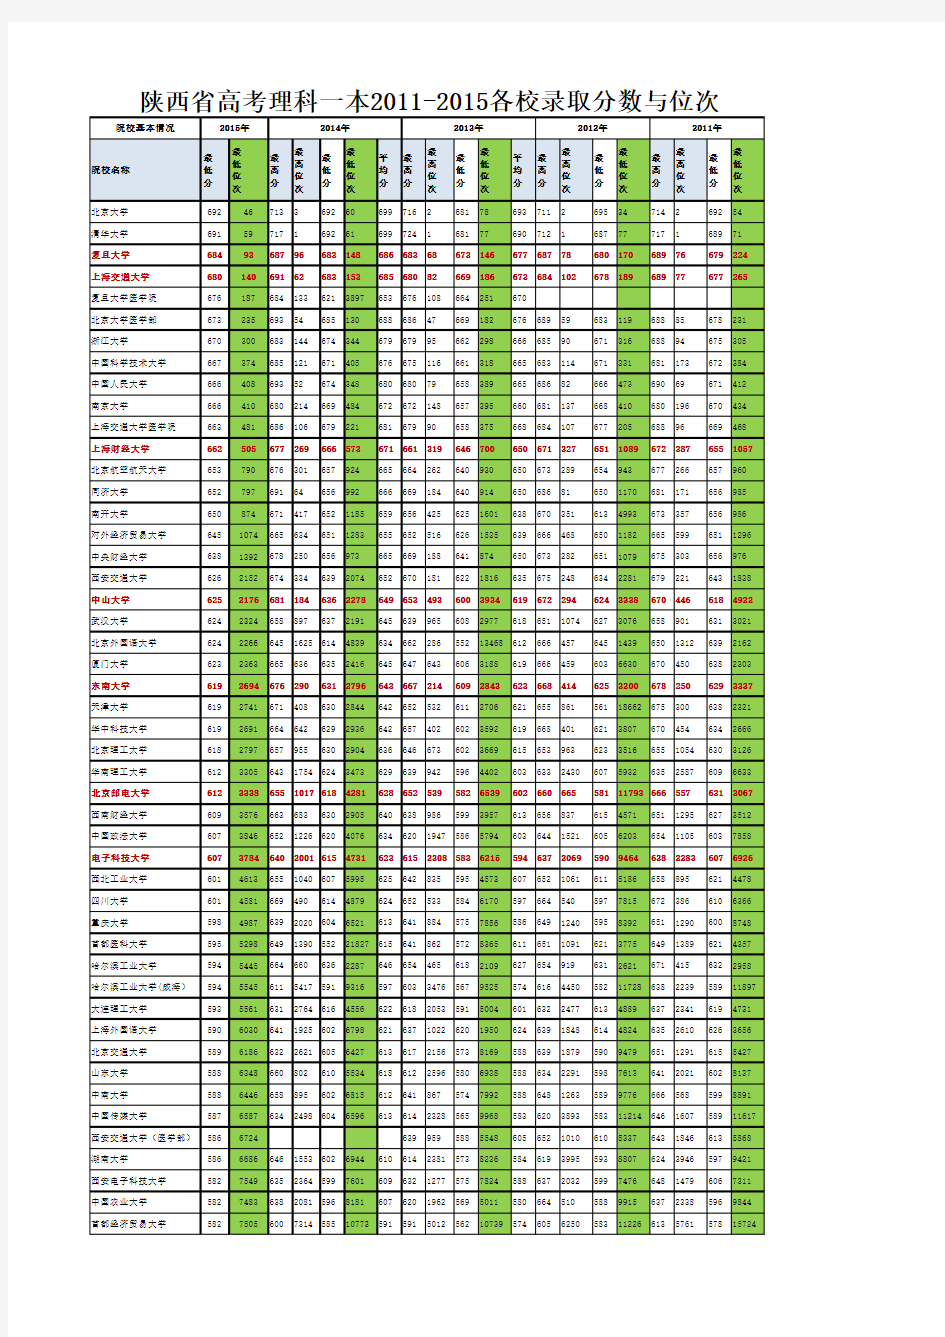 陕西省高考理科一本2011-2015各校录取分数与位次(统计)